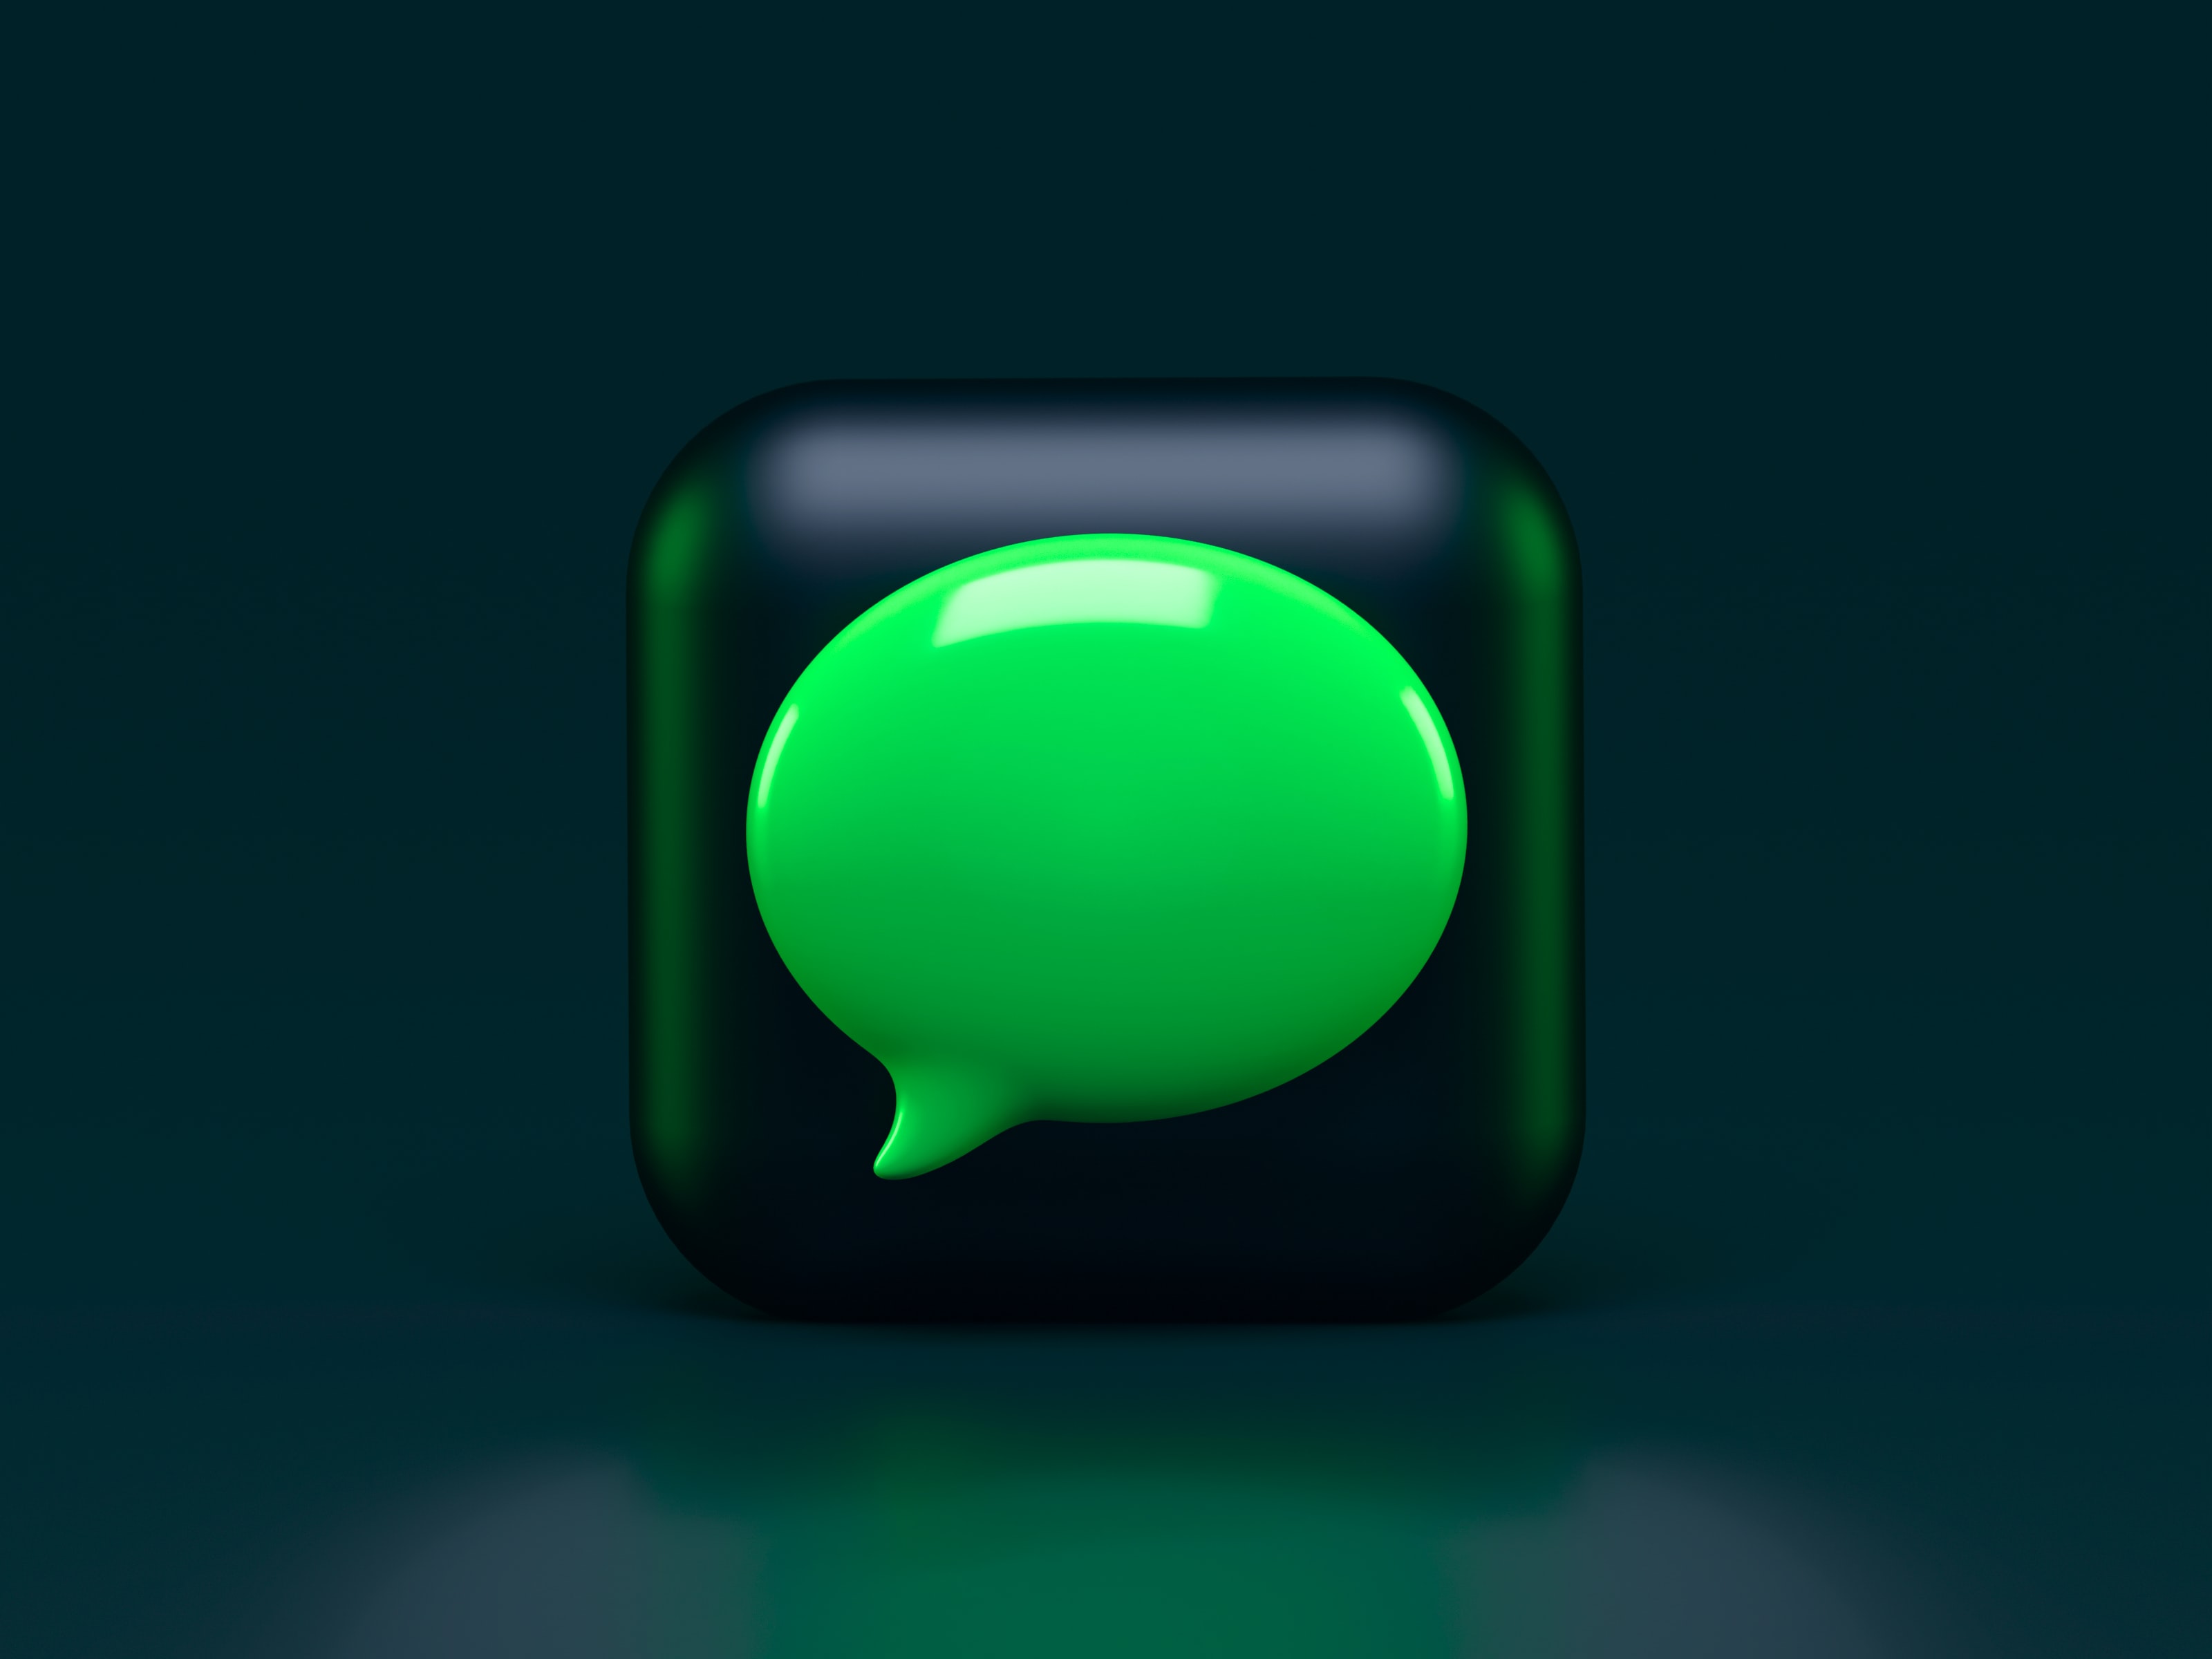 bulle de dialogue stylisée verte exprimant le discours green